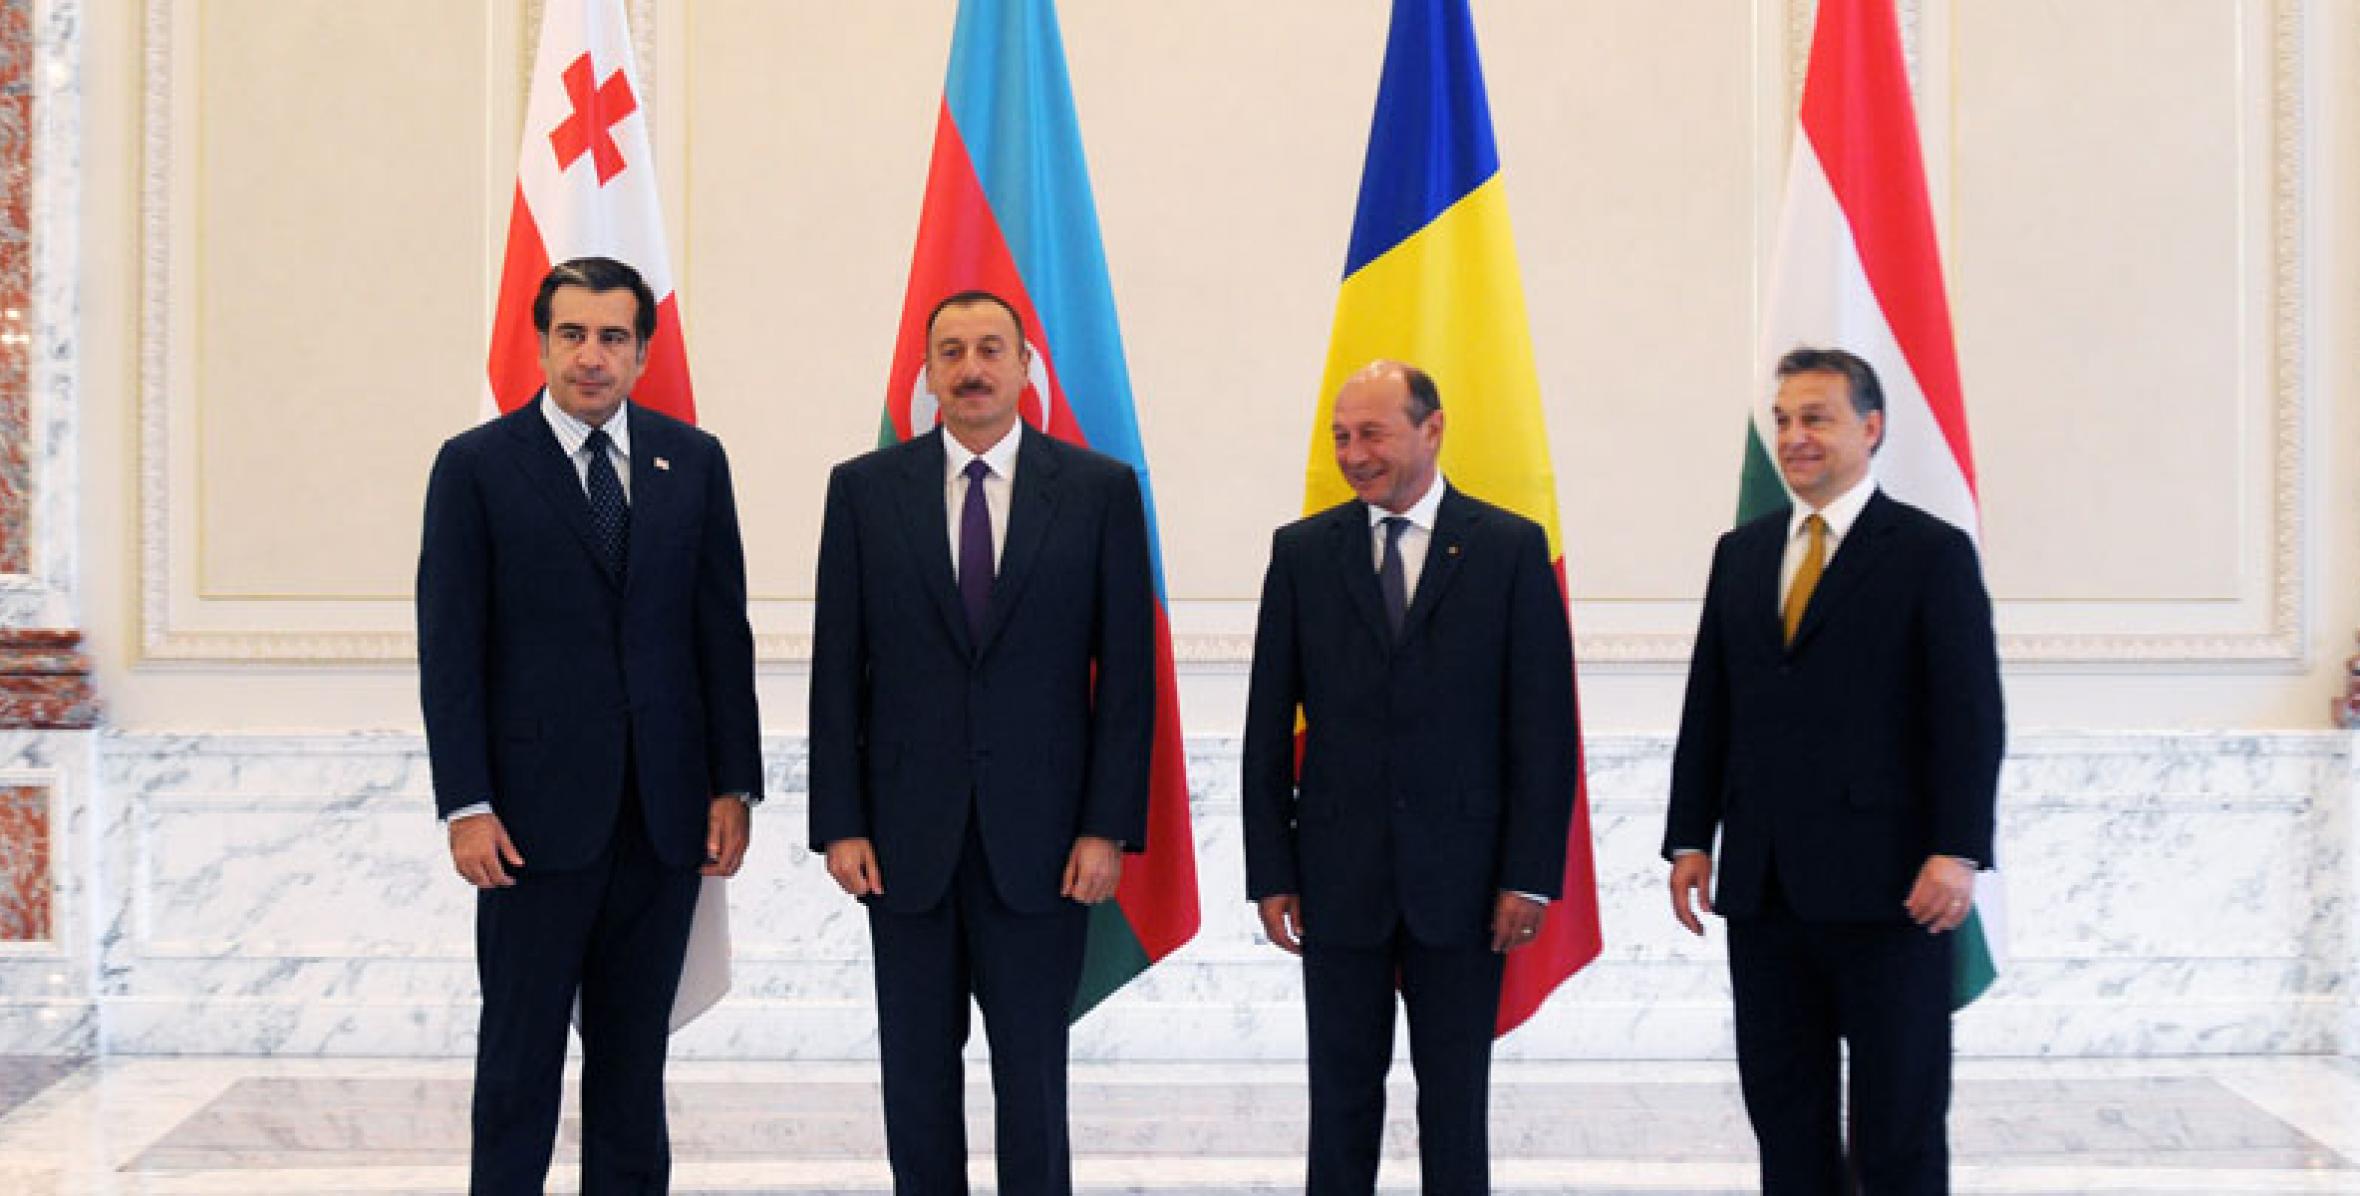 Состоялась встреча глав государств и правительств Азербайджана, Грузии, Румынии и Венгрии